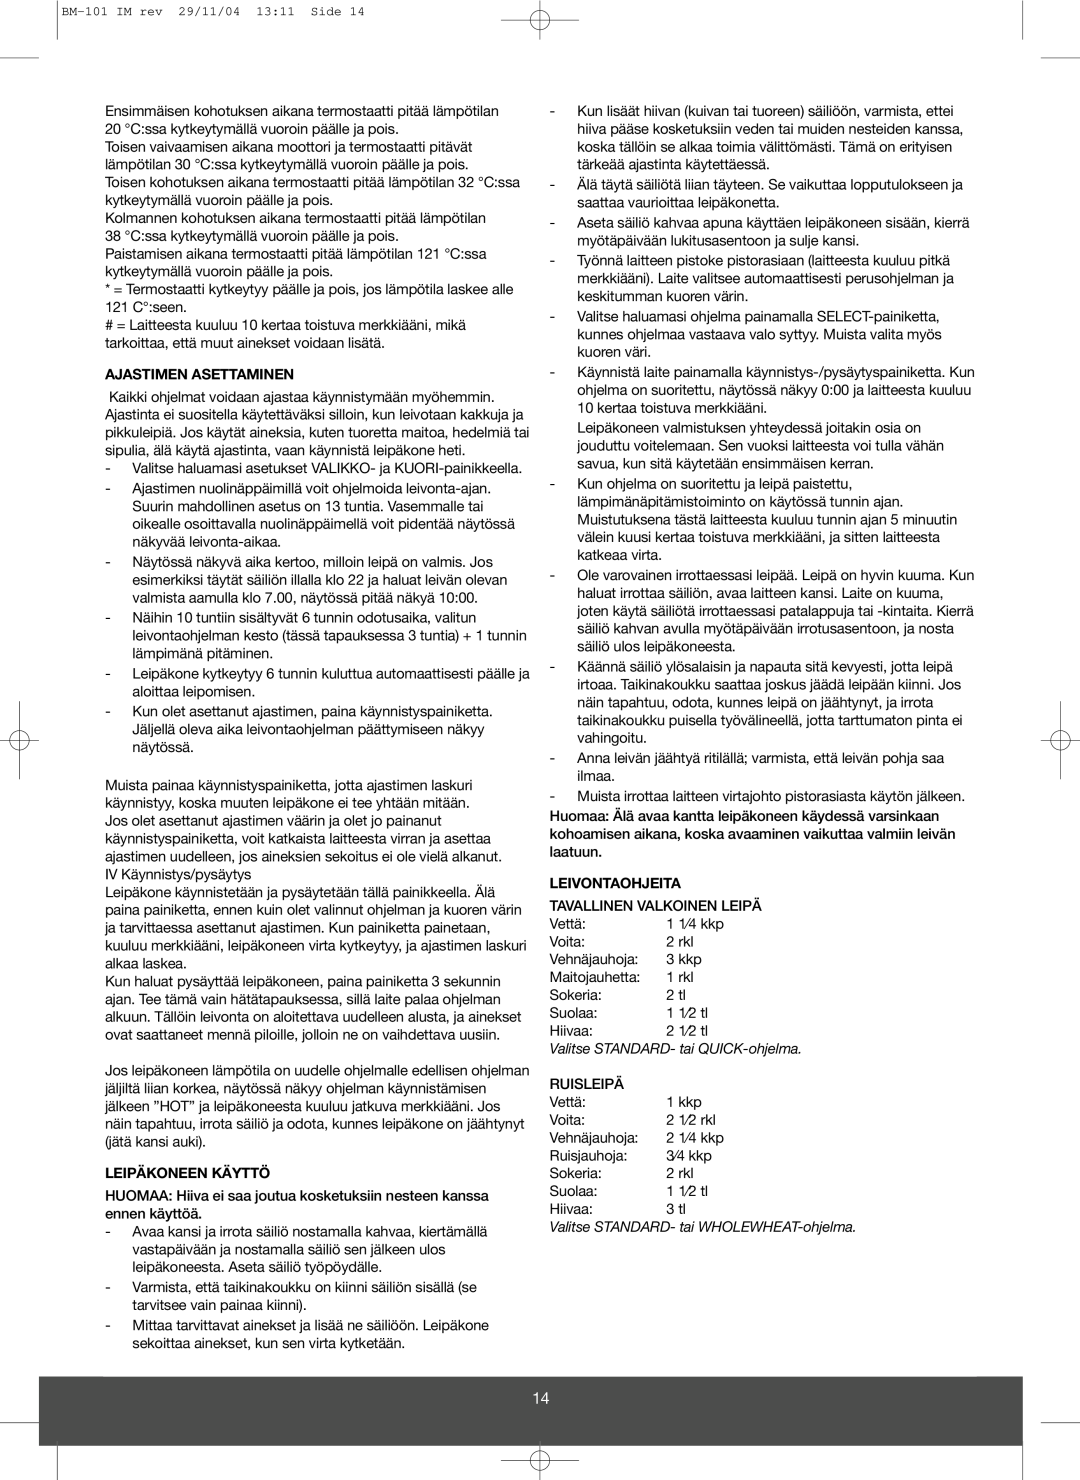 Melissa 643-032 manual Ajastimen Asettaminen, Leipäkoneen Käyttö, Leivontaohjeita, Valitse STANDARD- tai QUICK-ohjelma 